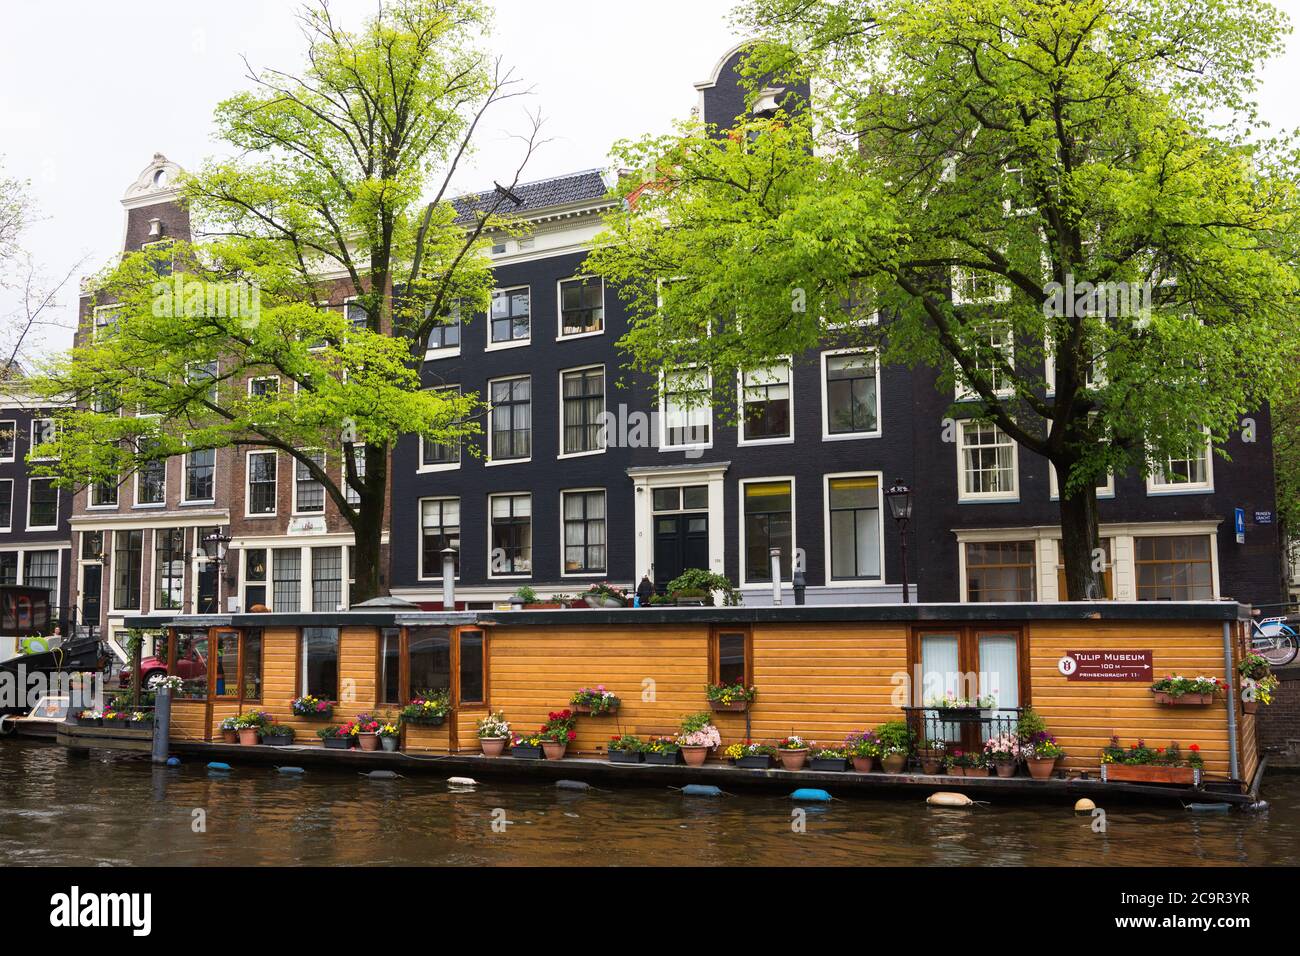 Bateau maison dans le canal d'Amsterdam en face de belles maisons uniques d'Amsterdam, pays-Bas Banque D'Images